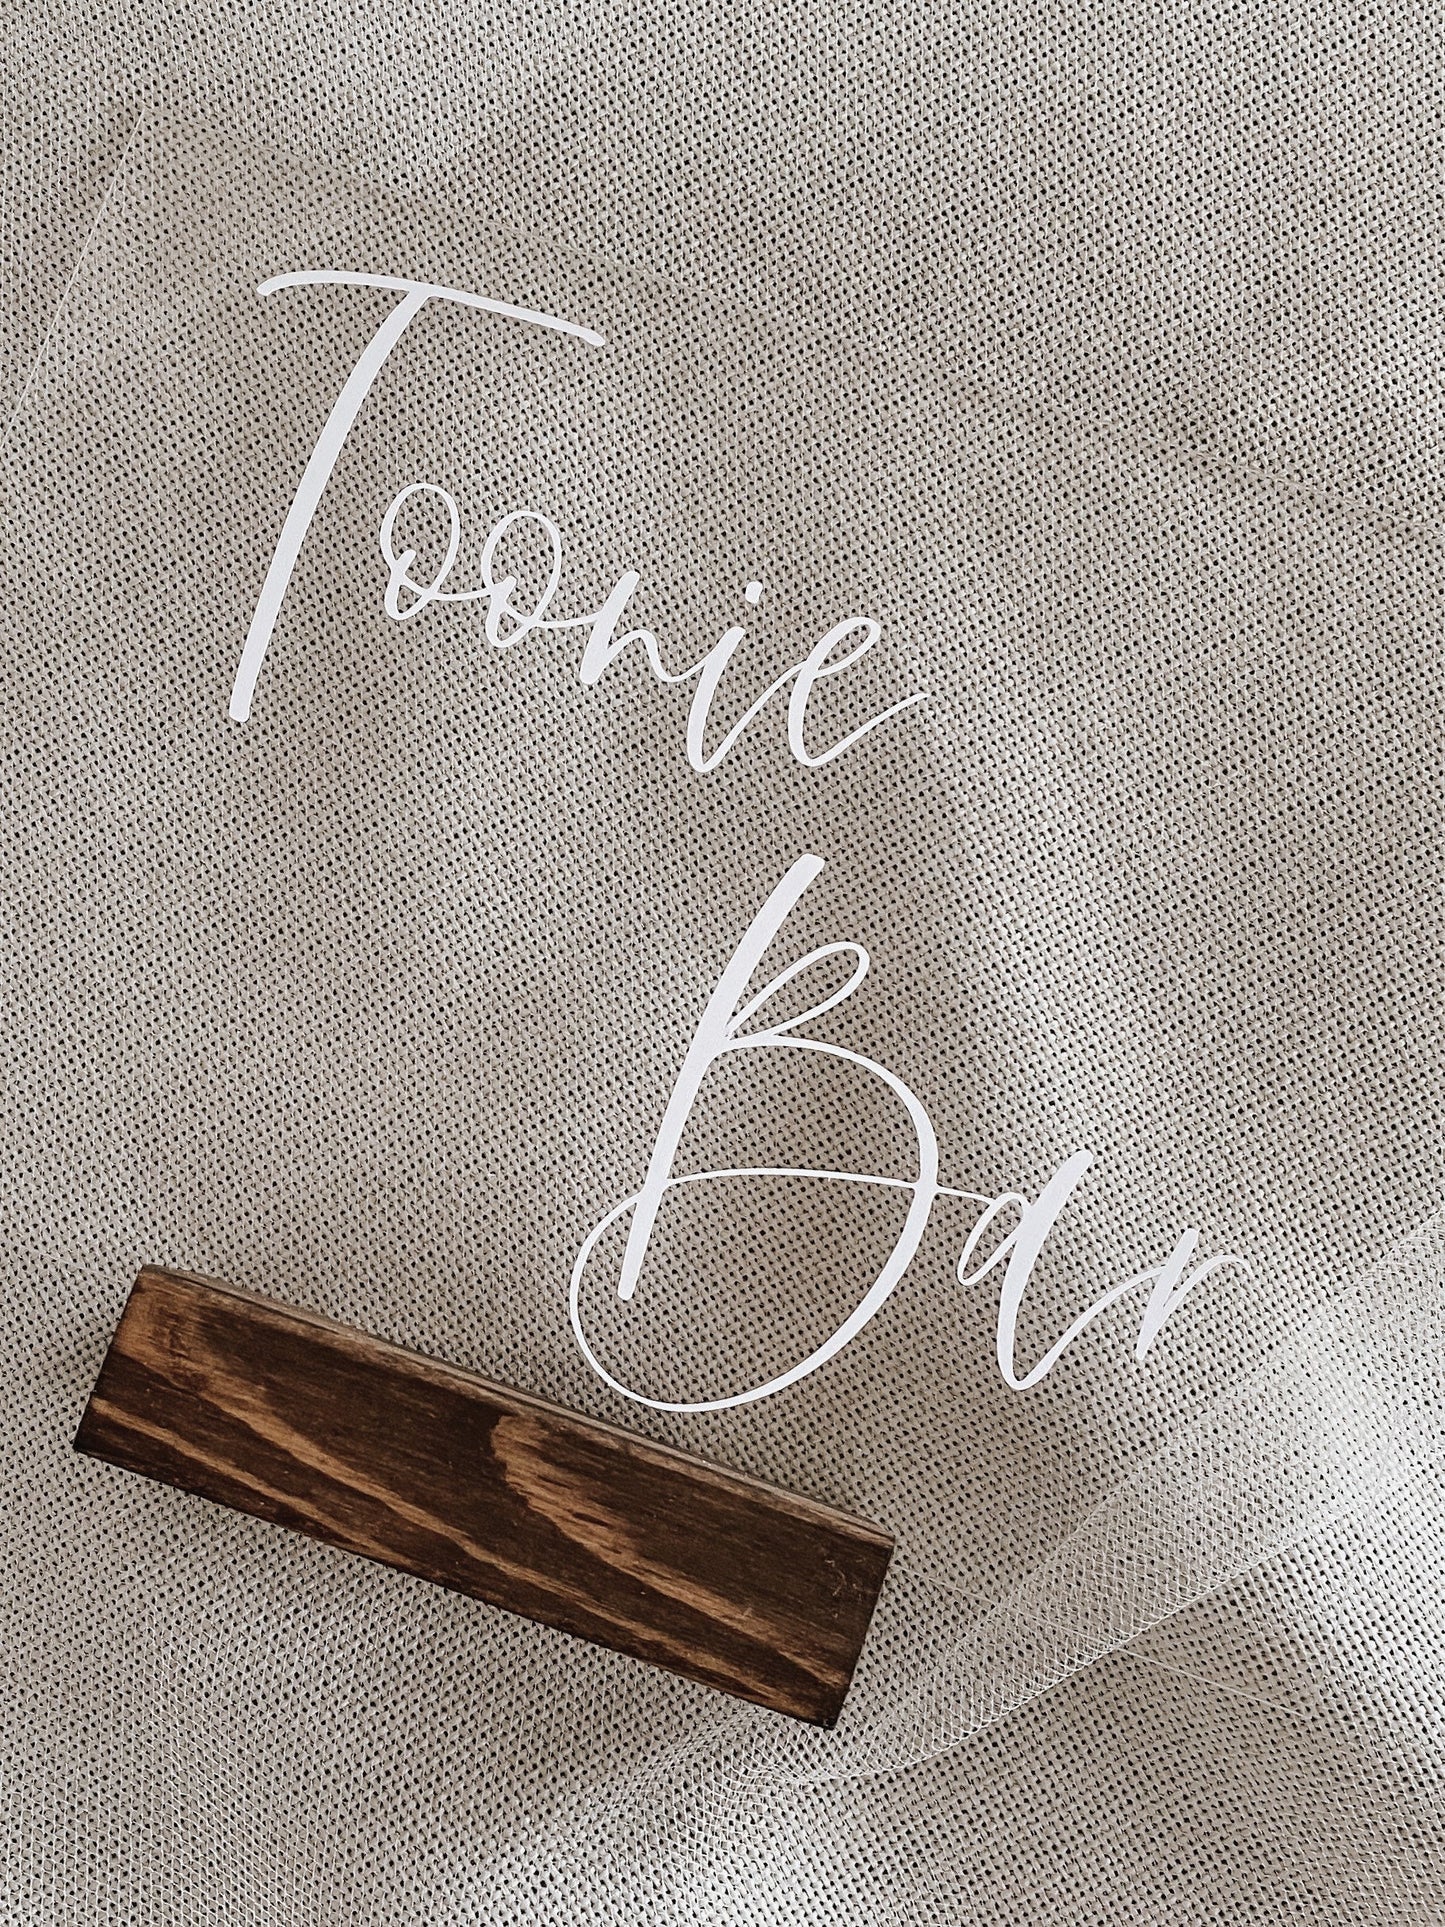 Acrylic Toonie Bar Sign